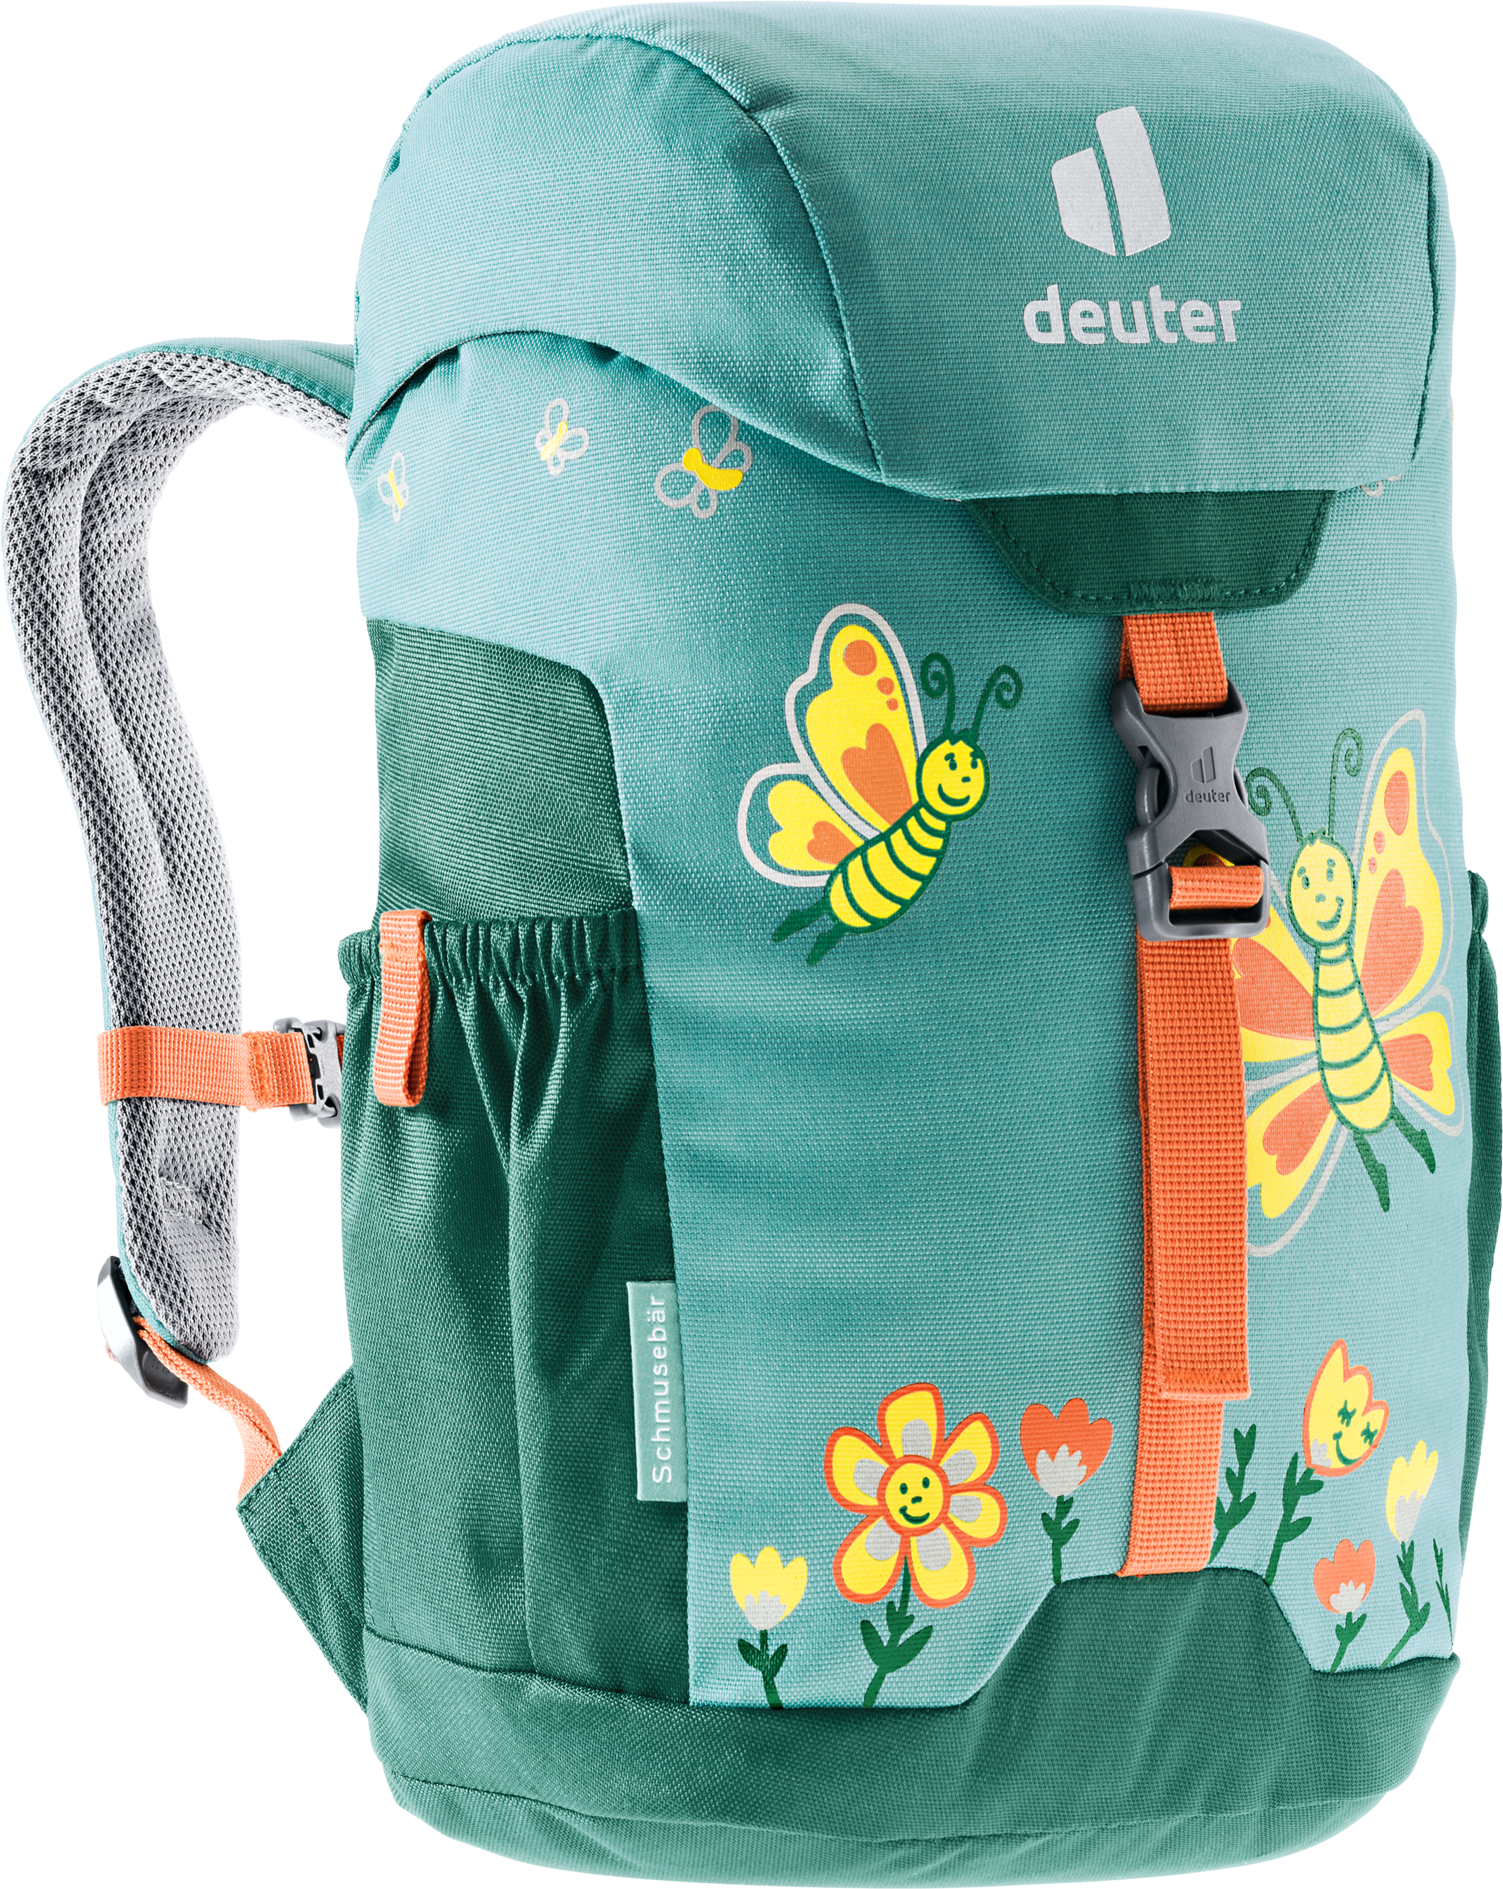 Deuter Kids’ Schmusebär Dustblue-Alpinegreen